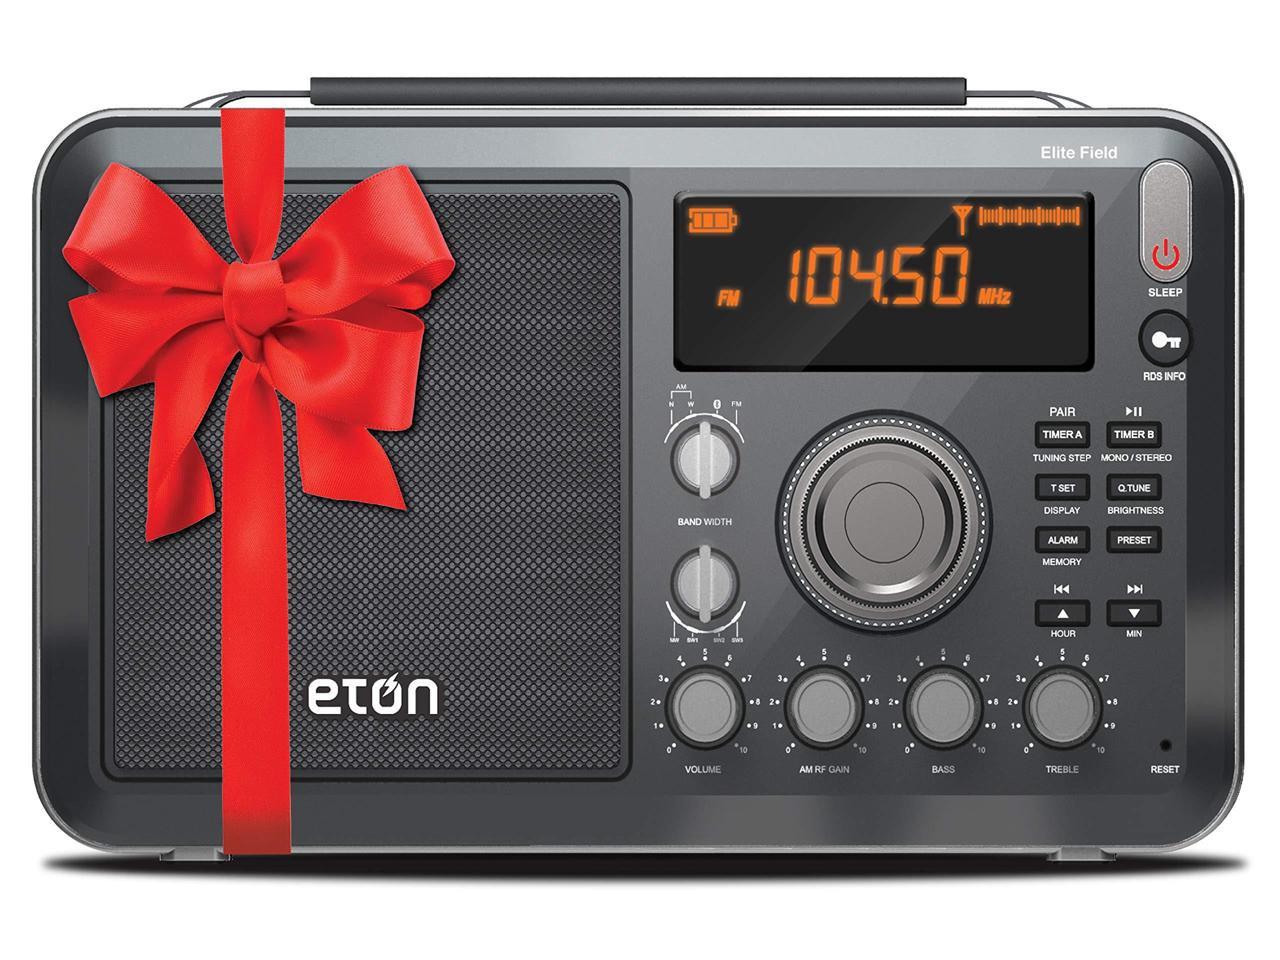 Eton Elite Field Am Fm Shortwave Desktop Radio With Bluetooth